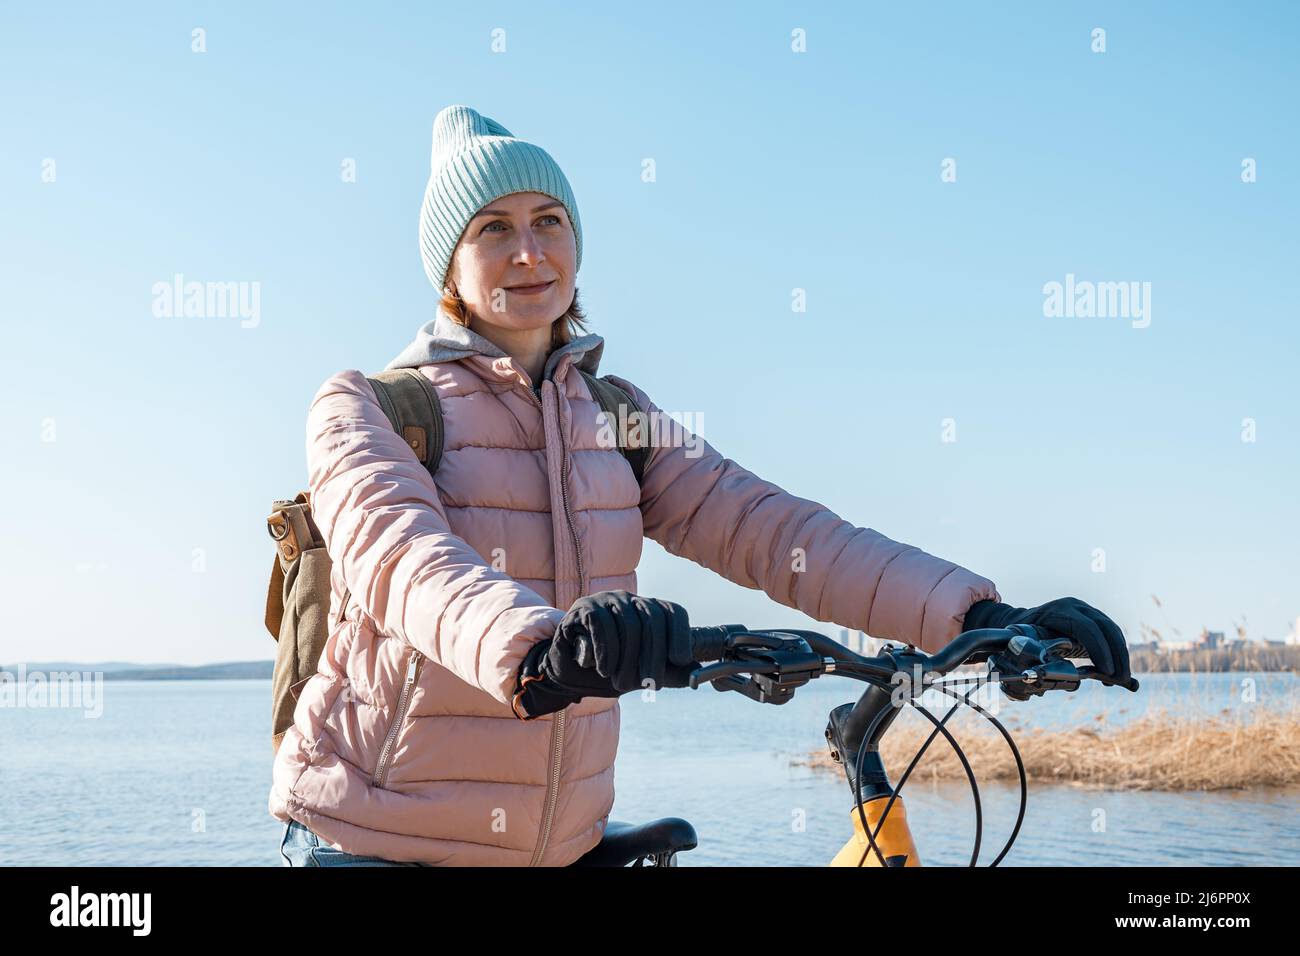 Une jeune femme est debout avec un vélo. Promenez-vous à l'extérieur. En regardant sur le côté. Jolie jeune femme d'origine caucasienne avec un sac à dos et une chaude cl Banque D'Images